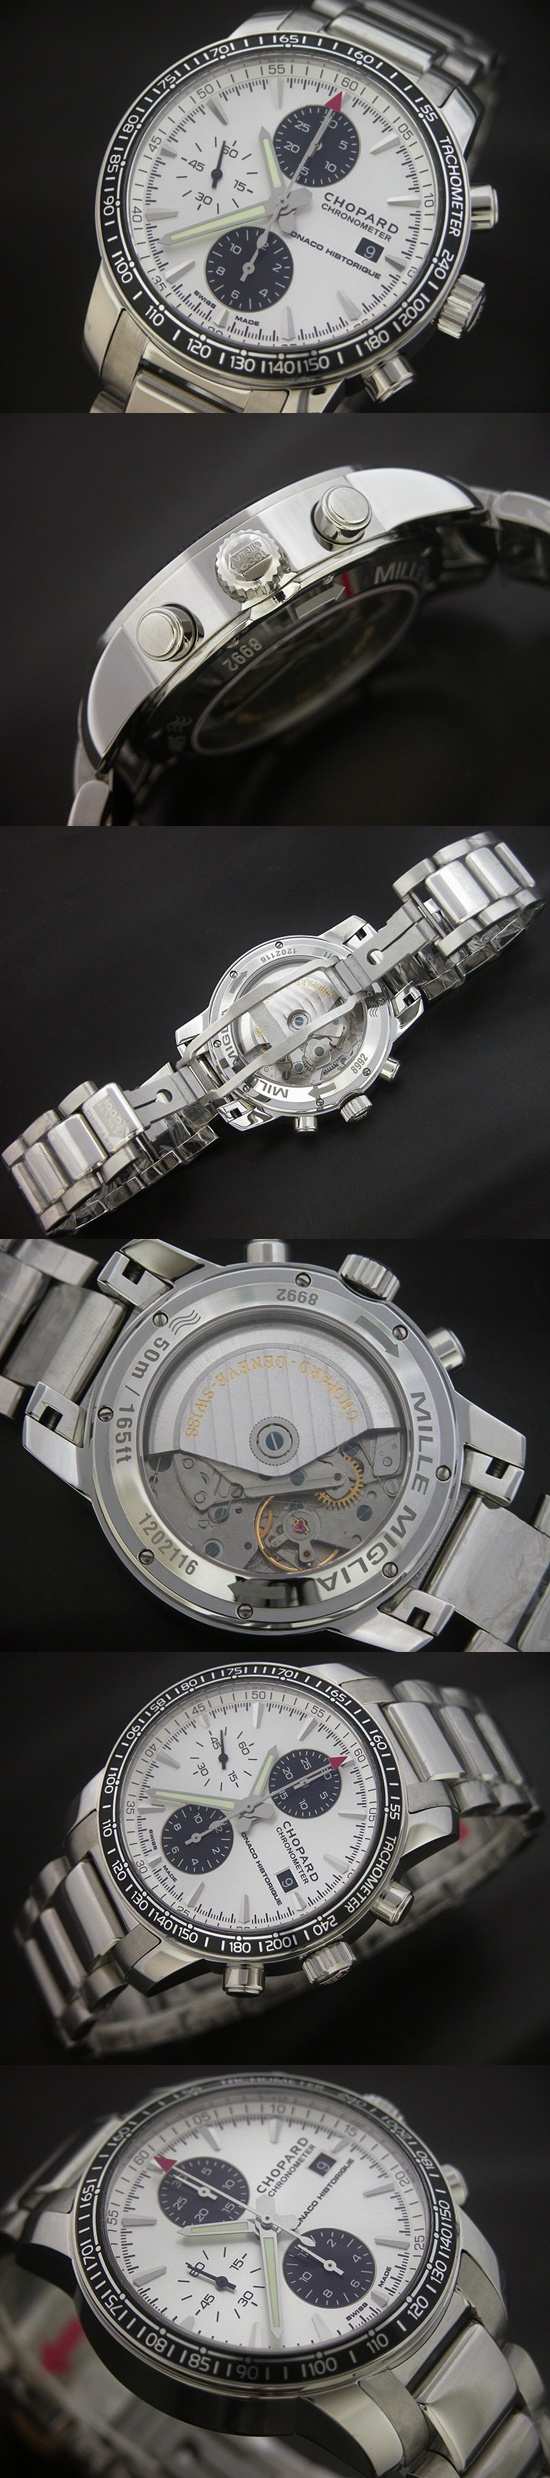 おしゃれなブランド時計がショパール-CHOPARD-ミッレミリア-16-8489-3001-ah 男性用腕時計を提供します.